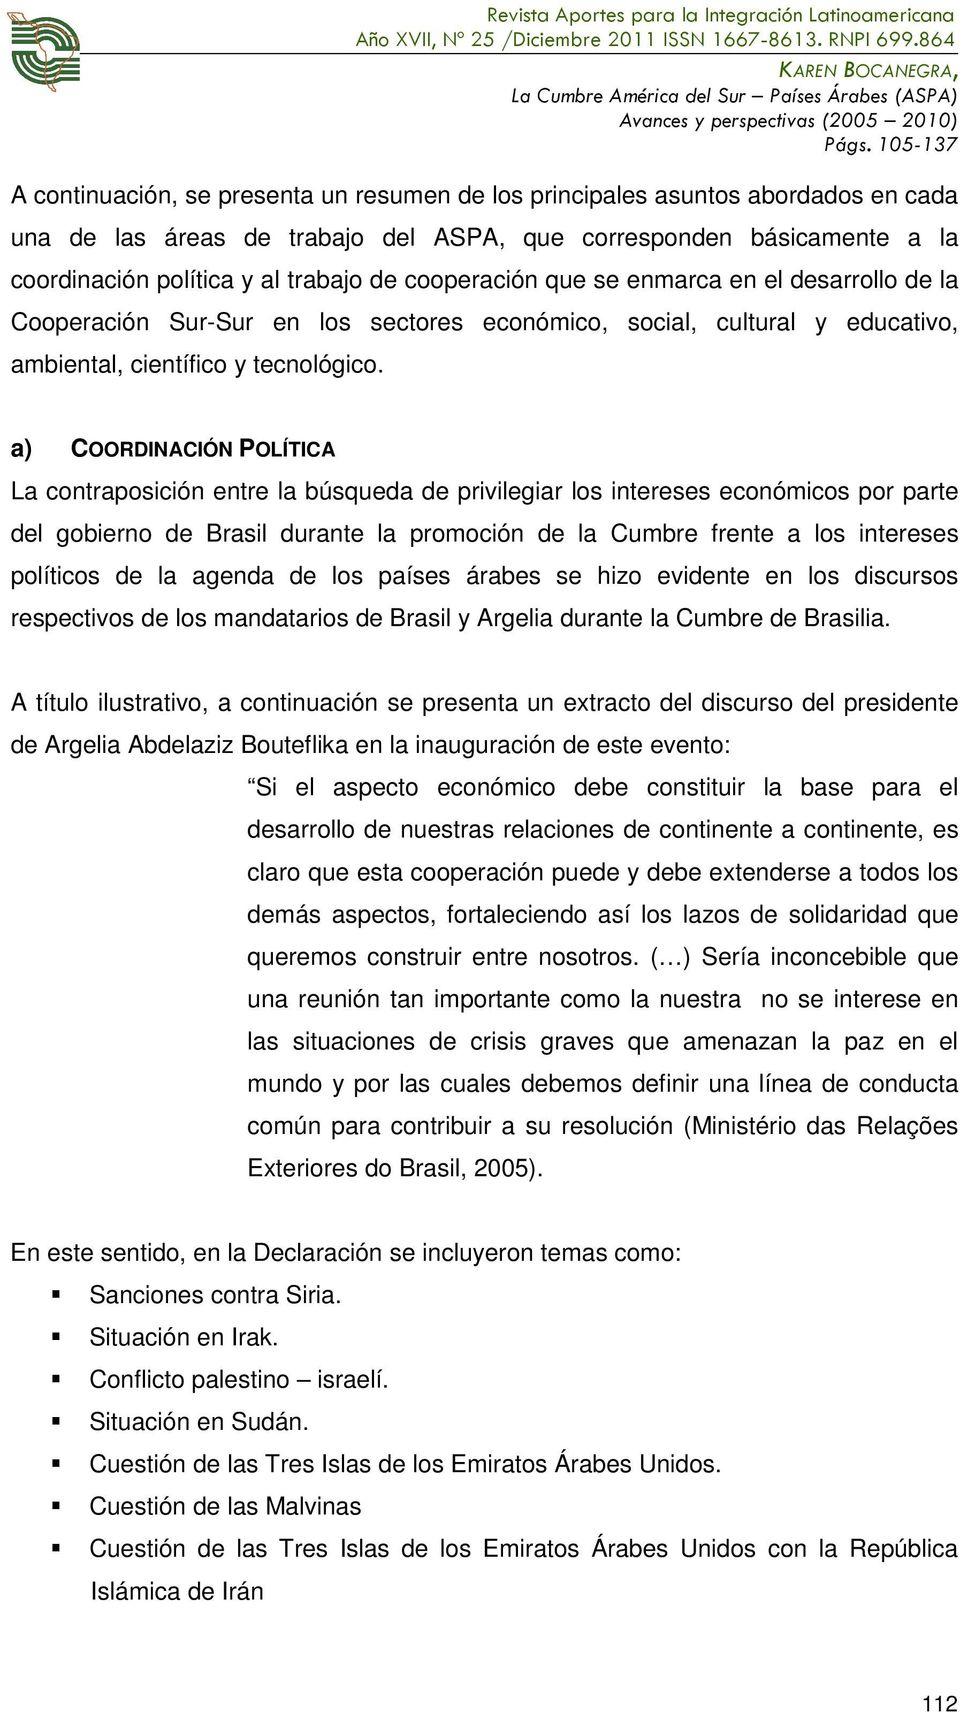 a) COORDINACIÓN POLÍTICA La contraposición entre la búsqueda de privilegiar los intereses económicos por parte del gobierno de Brasil durante la promoción de la Cumbre frente a los intereses